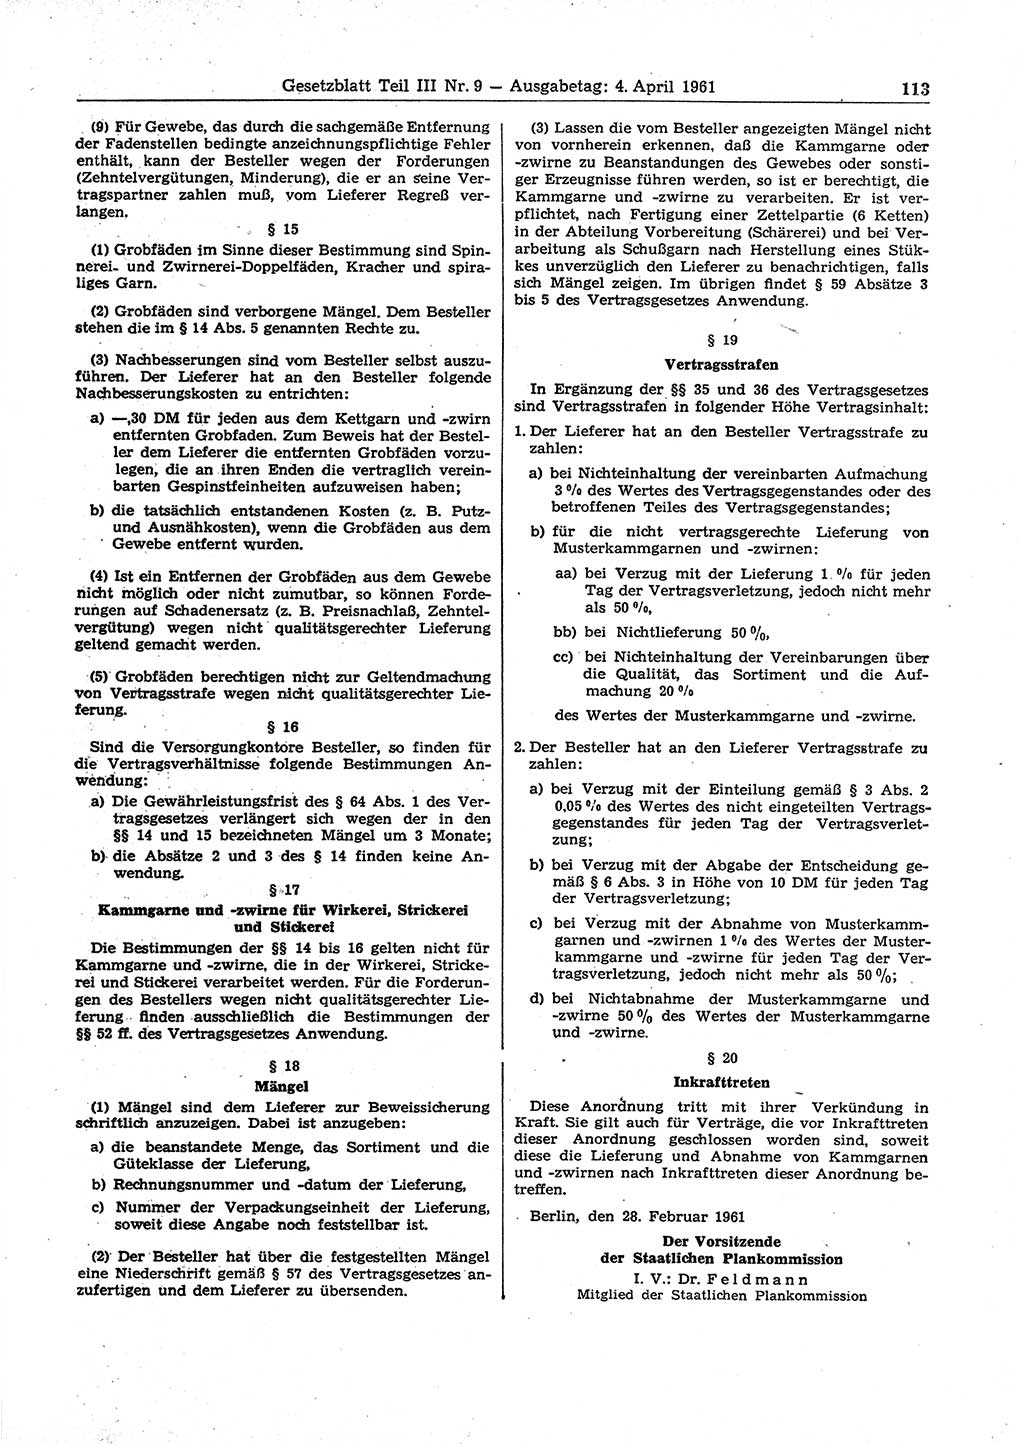 Gesetzblatt (GBl.) der Deutschen Demokratischen Republik (DDR) Teil ⅠⅠⅠ 1961, Seite 113 (GBl. DDR ⅠⅠⅠ 1961, S. 113)